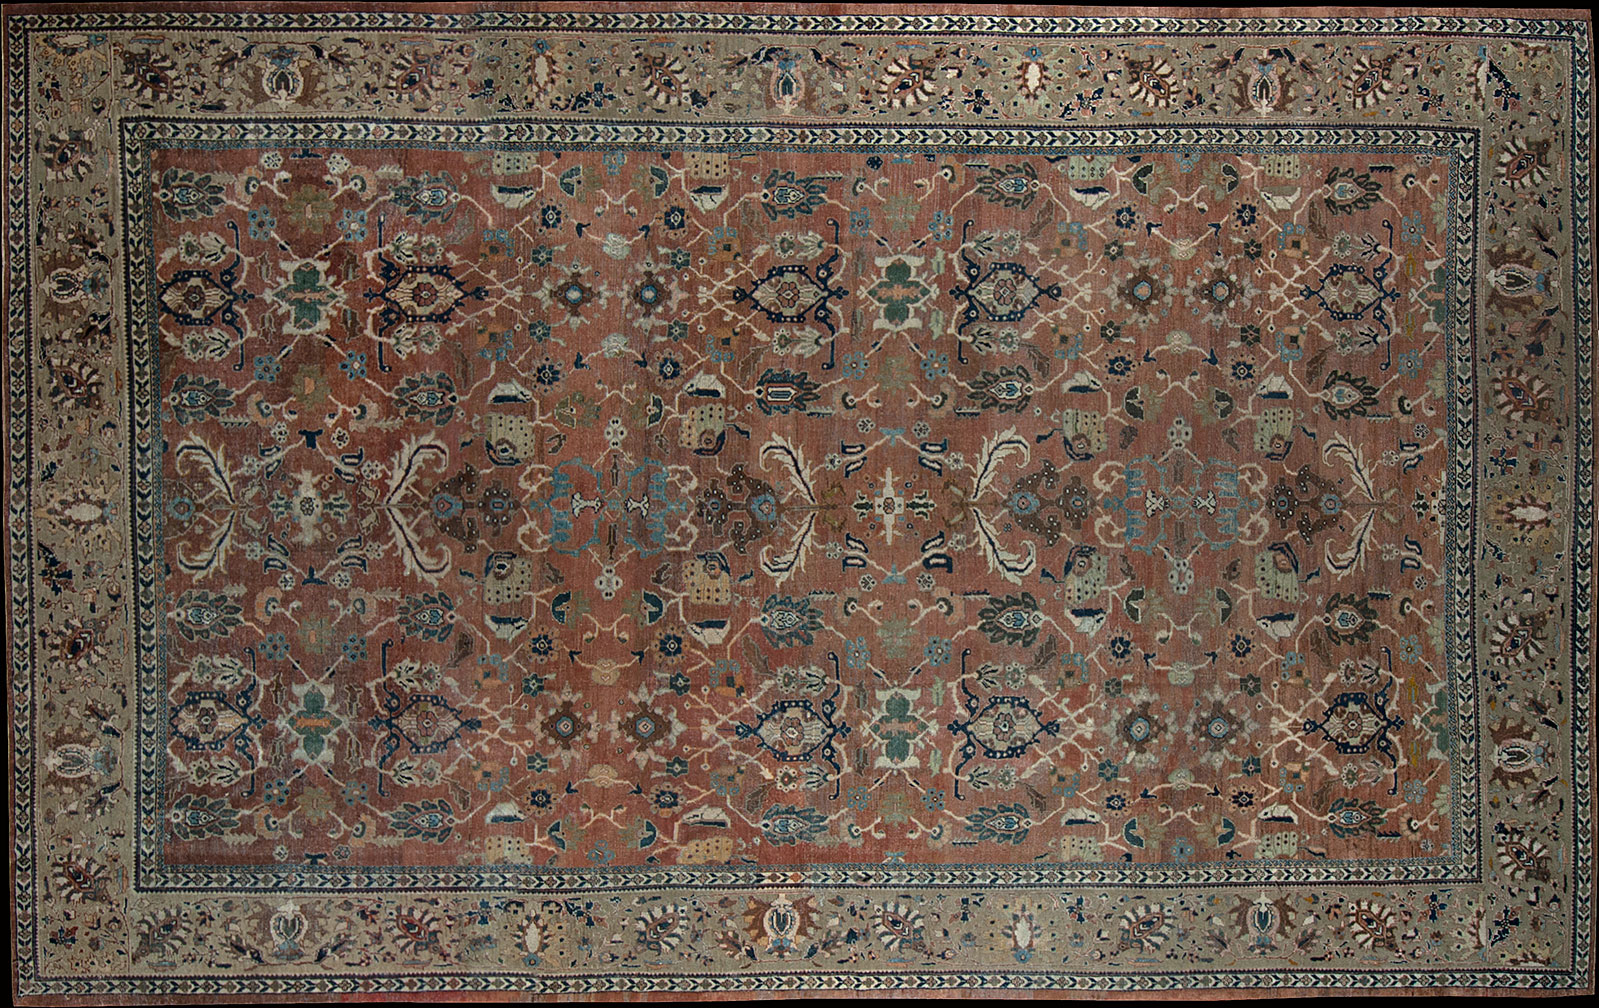 Antique sultan abad Carpet - # 51395